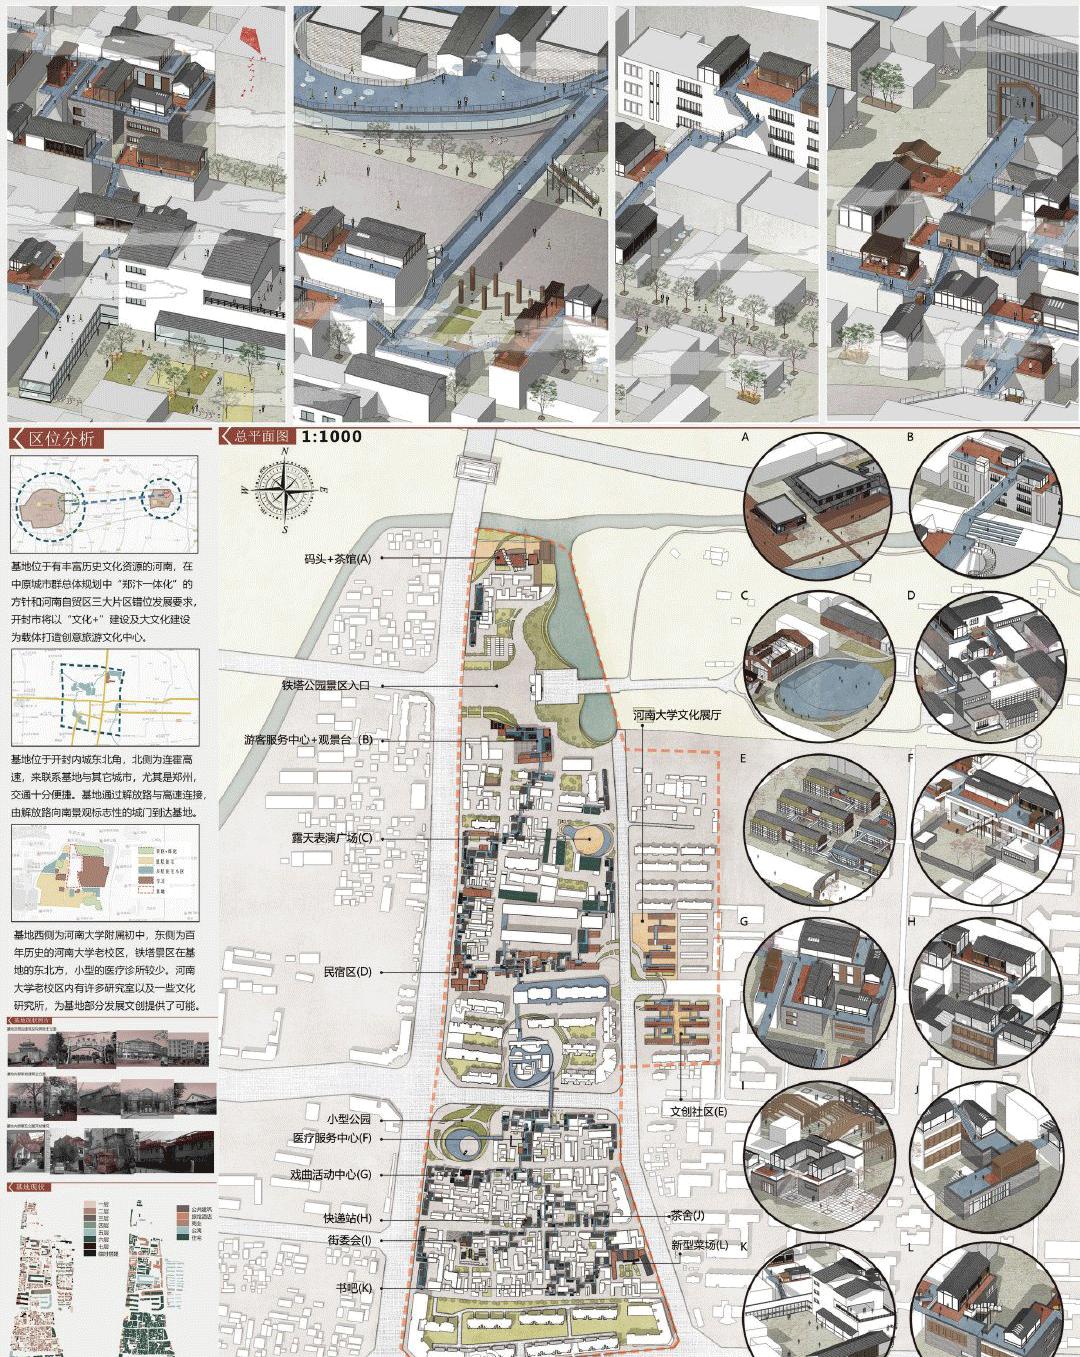 2015年UA国际竞赛——城的众创空间-建筑设计资料-筑龙建筑设计论坛